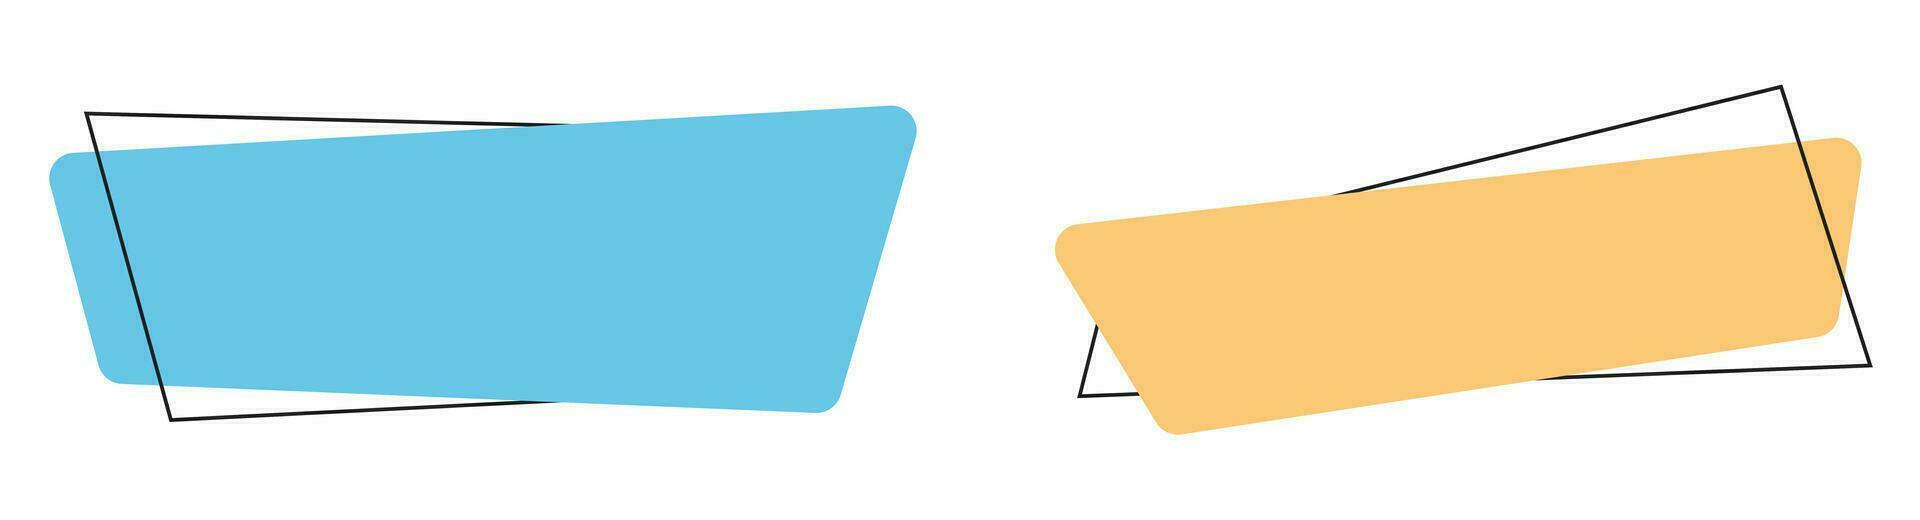 géométrique coloré bannières dans plat style vecteur illustration isolé sur blanc